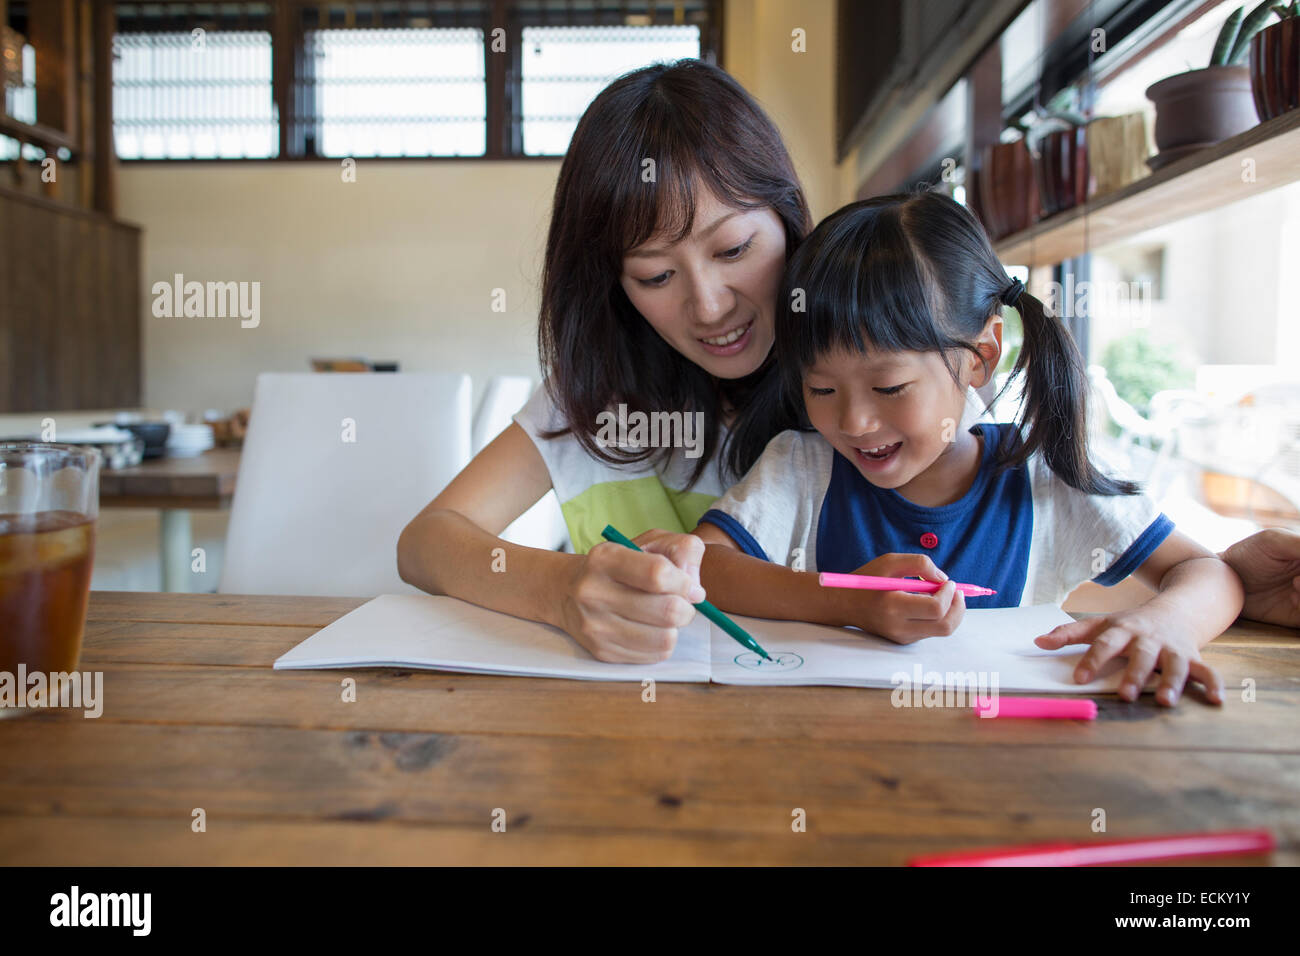 Mutter und Tochter sitzen an einem Tisch, zeichnen mit Filzstift Stifte, lächelnd. Stockfoto